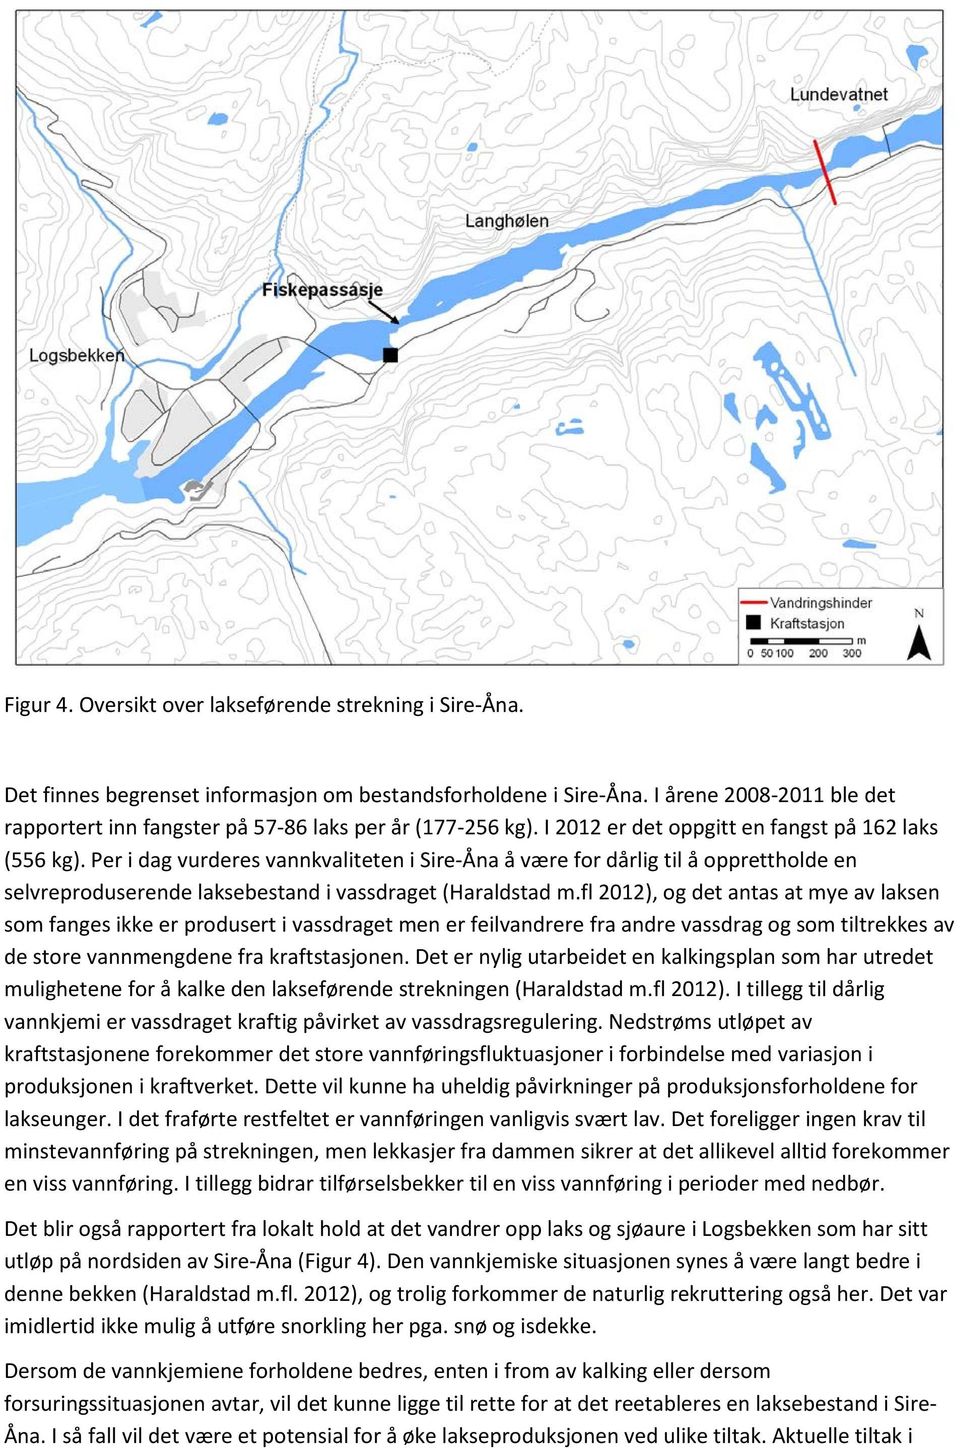 Per i dag vurderes vannkvaliteten i Sire-Åna å være for dårlig til å opprettholde en selvreproduserende laksebestand i vassdraget (Haraldstad m.